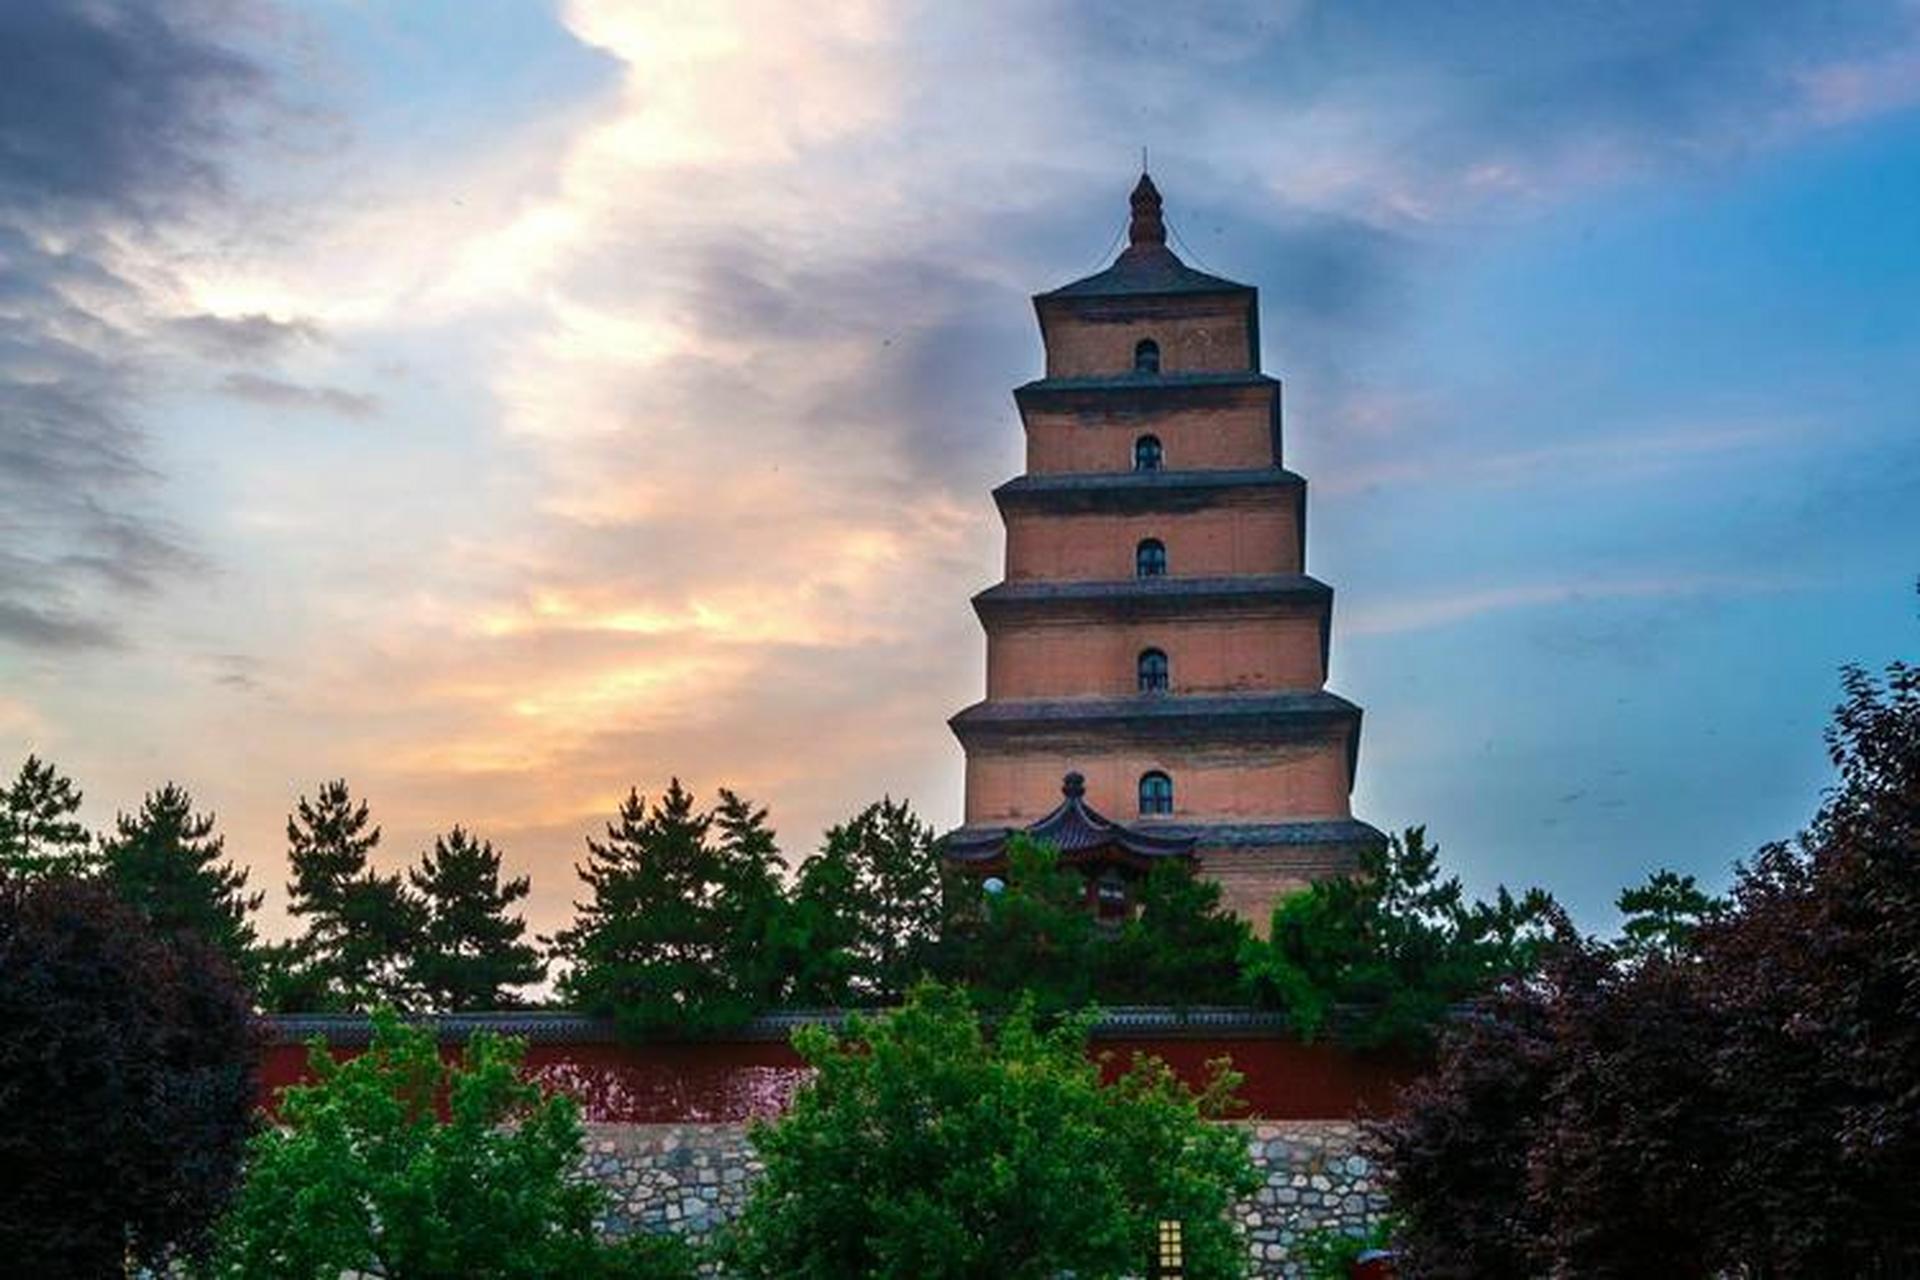 法门寺位于今陕西省扶风县城北,始建于北魏时期